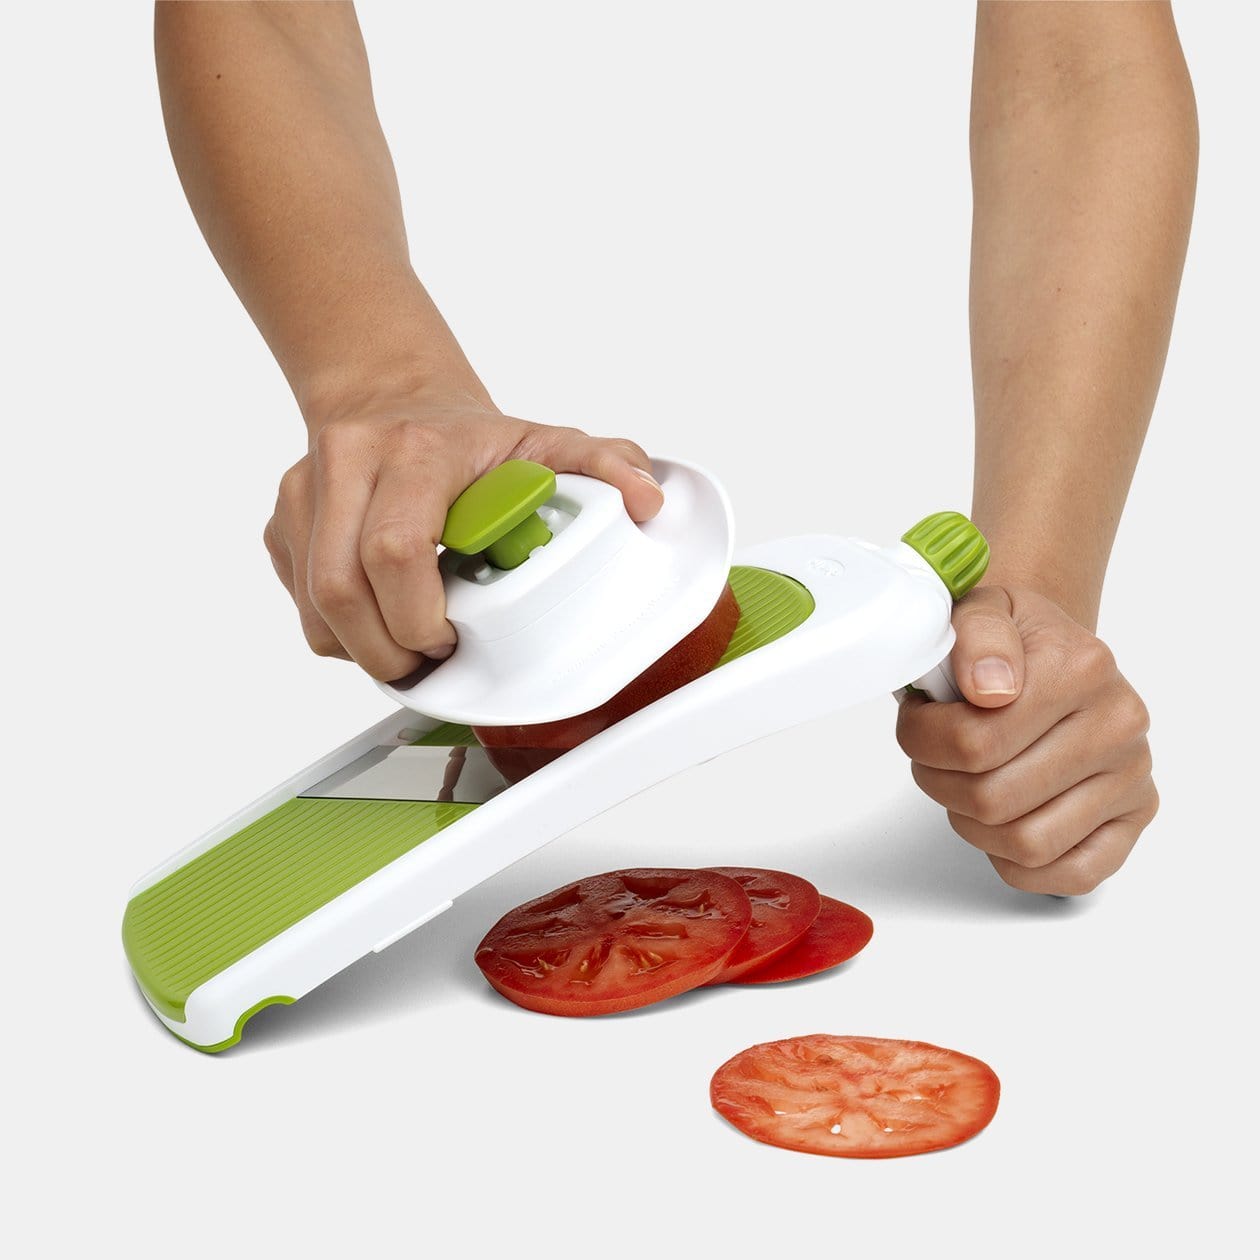 ONCE FOR ALL Mandoline Vegetable Slicer Adjustable Thickness